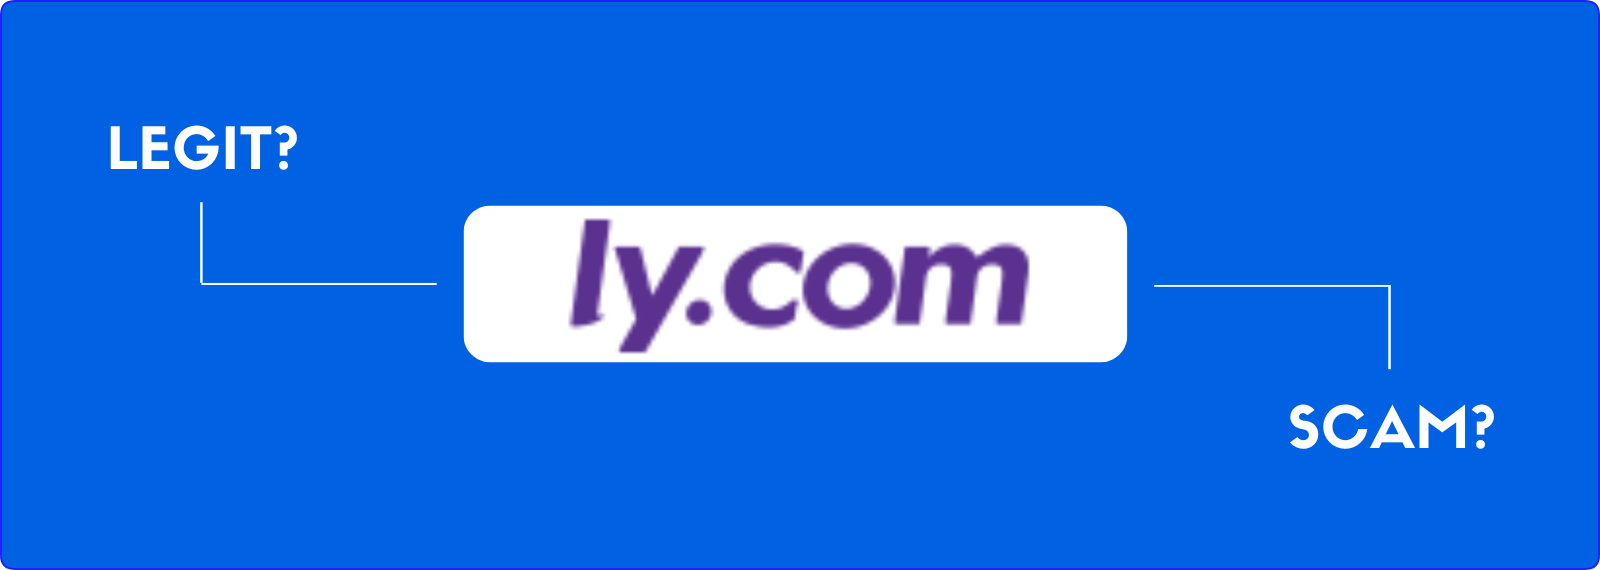 is ly.com legitimate